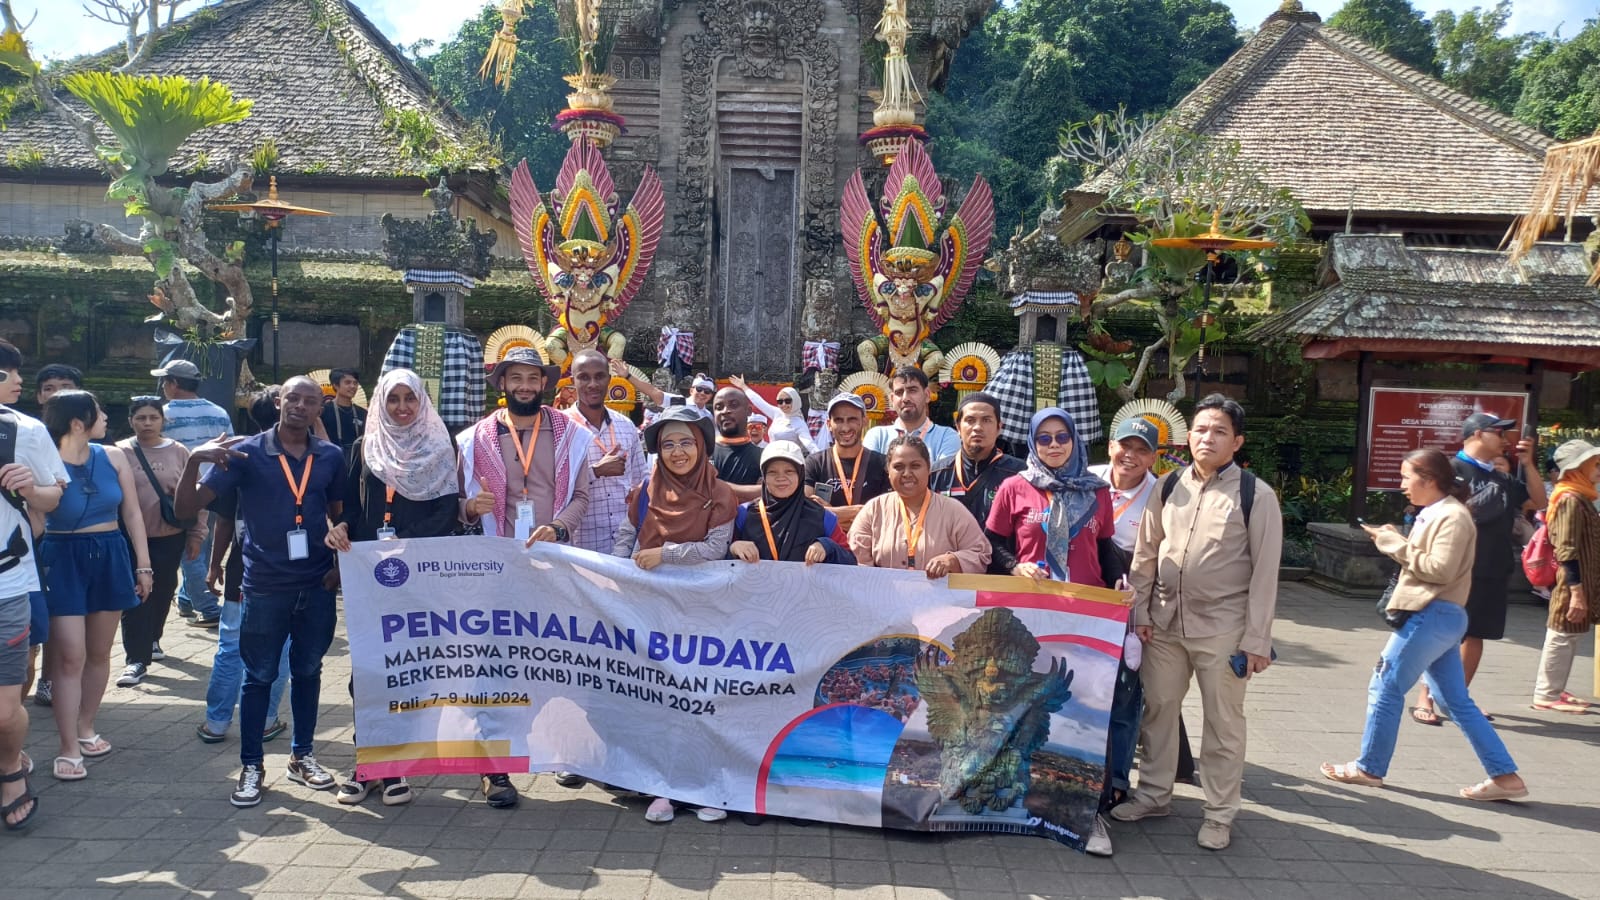 Sekolah Pascasarjana IPB University Kenalkan Corak Adat dan Budaya Indonesia pada Mahasiswa Internasional